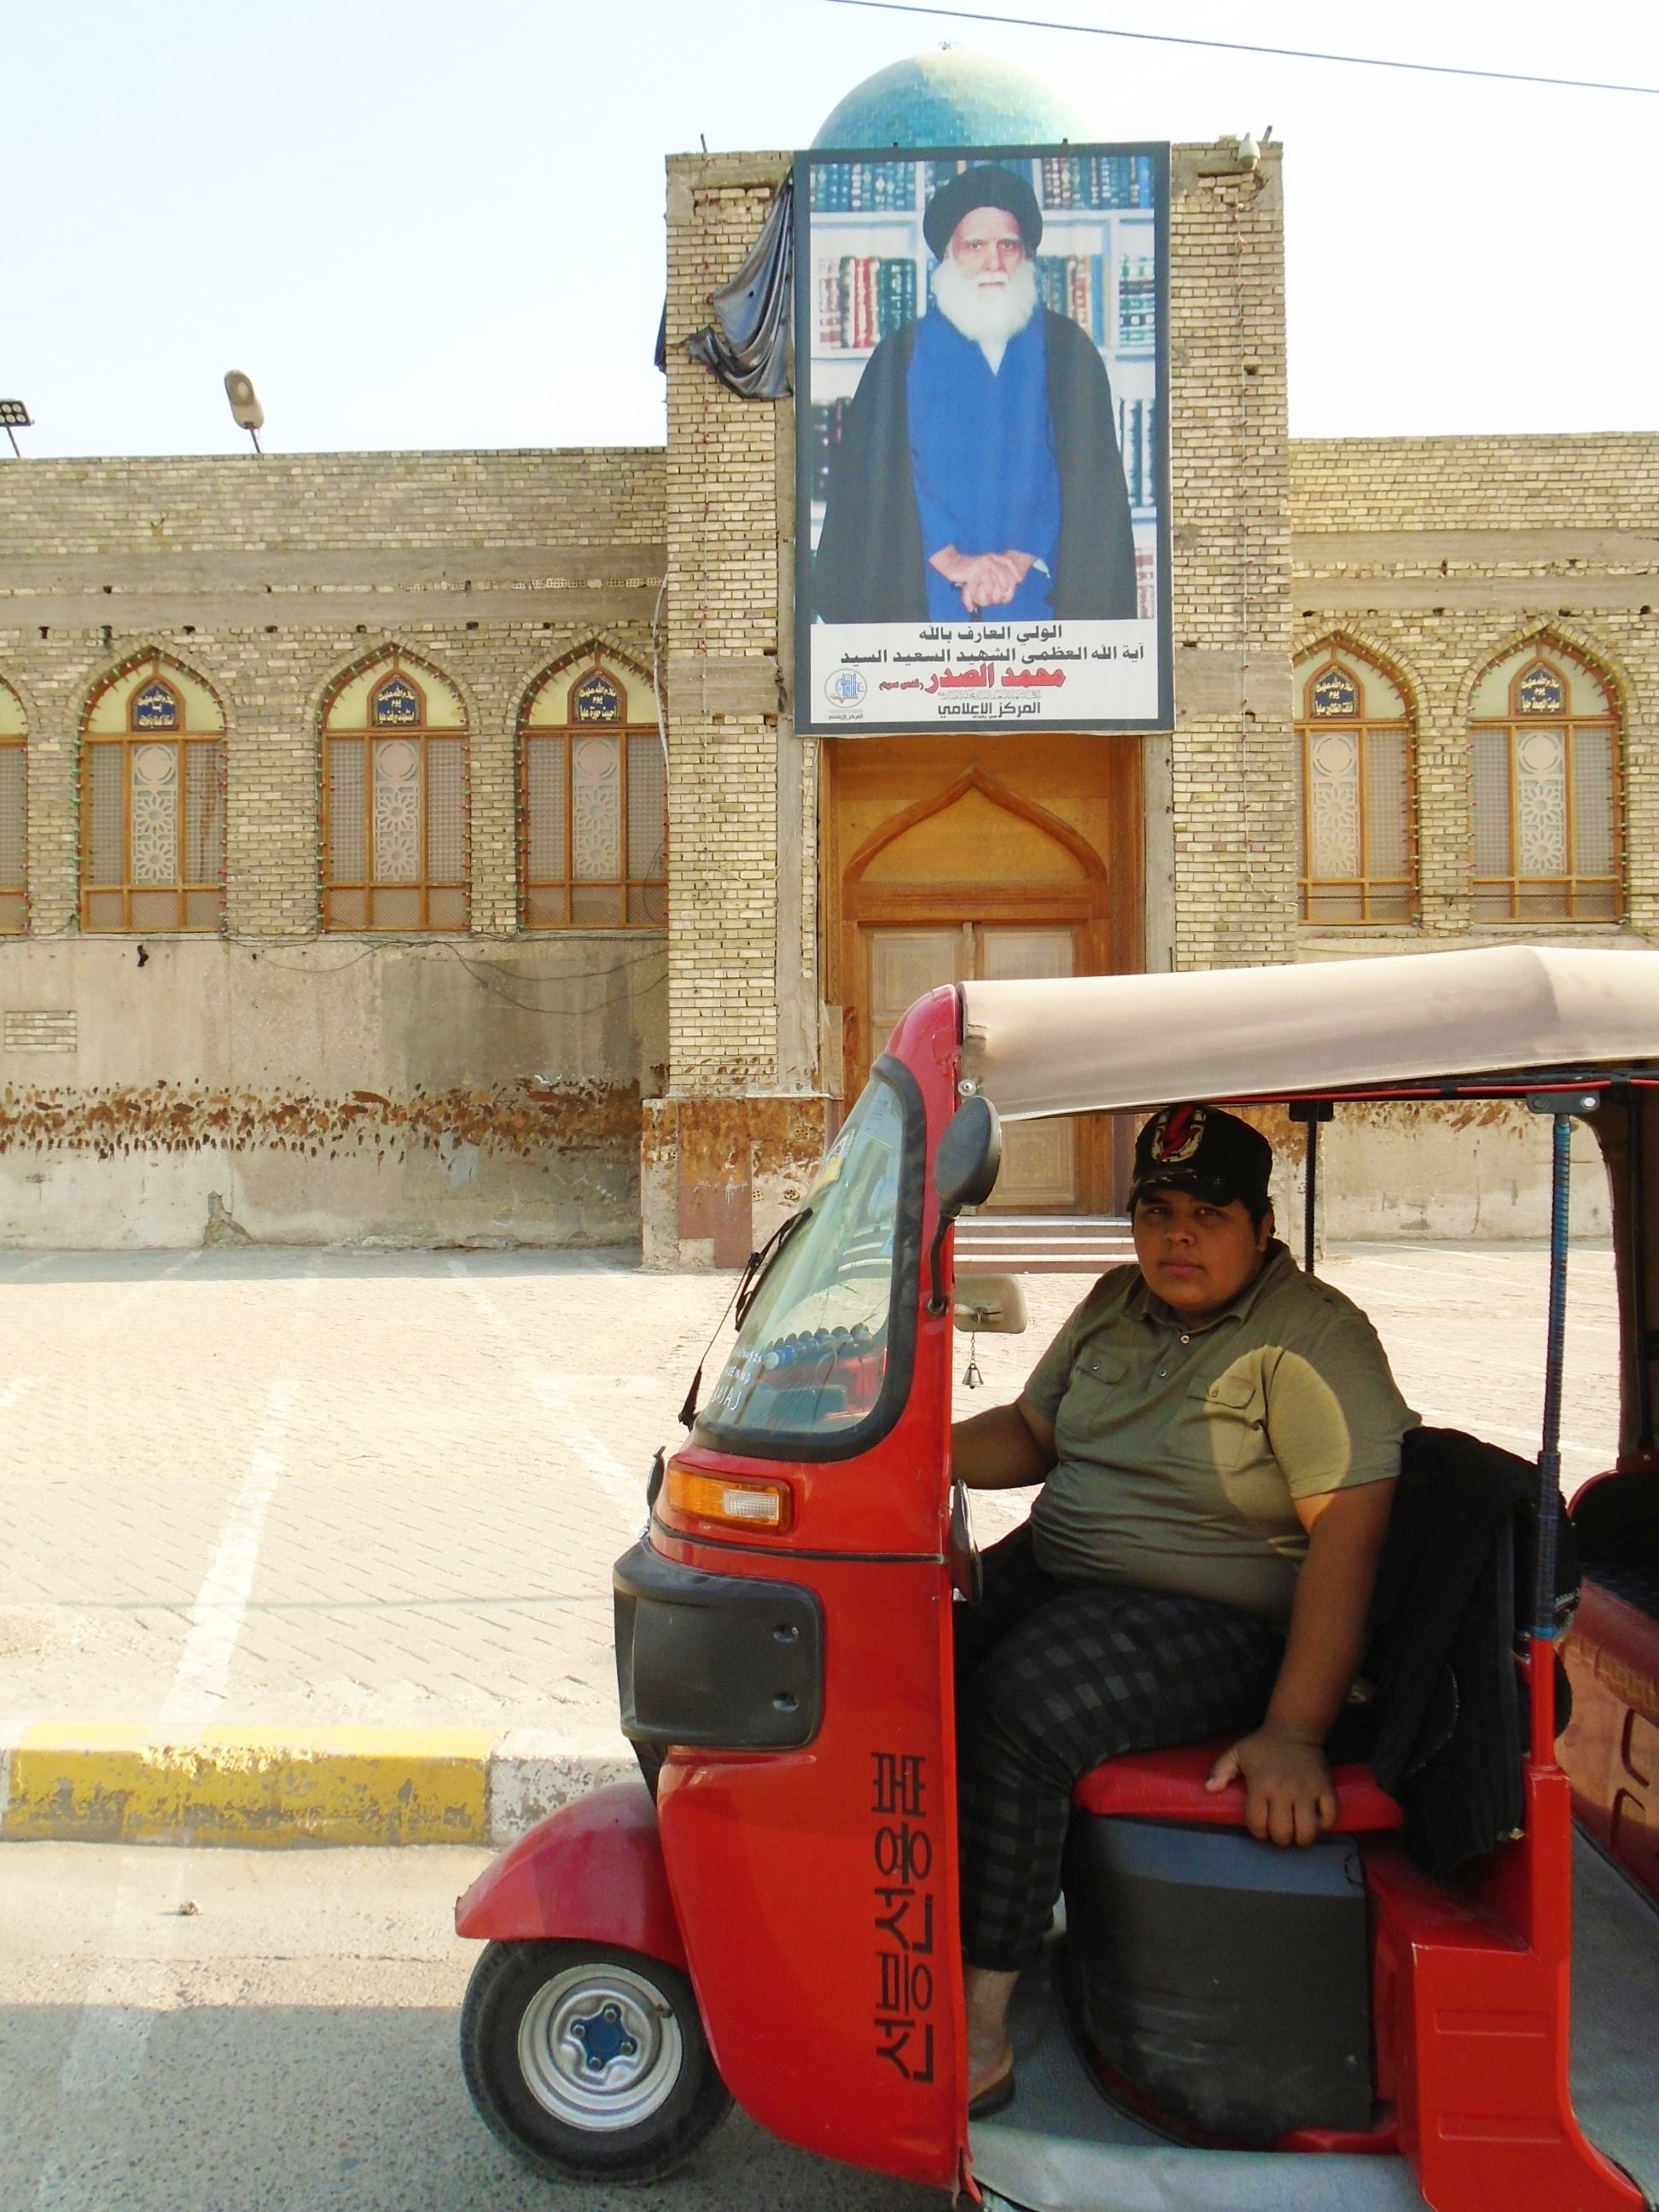 Hussein in his bright red tuk-tuk in Sadr City (photo: Birgit Svensson)